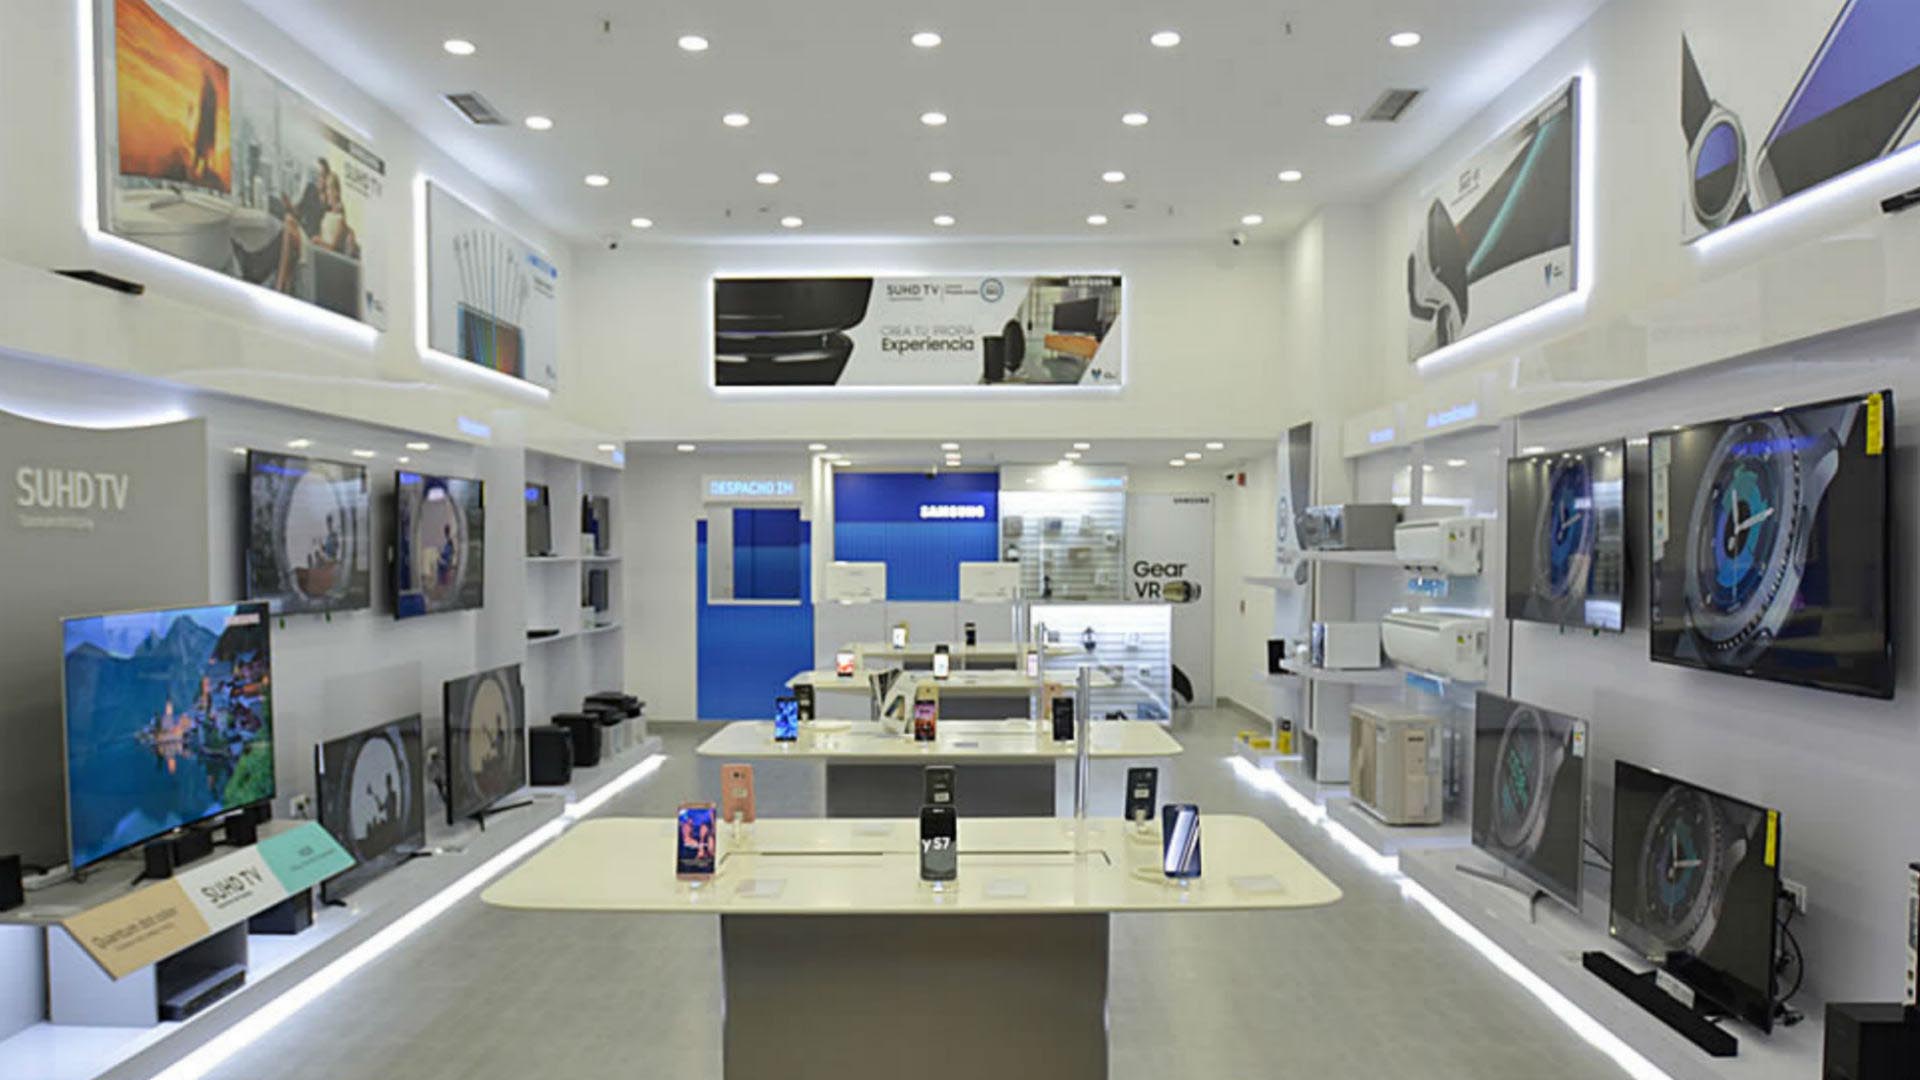 Doble llave - CLX Samsung inauguró nueva tienda en Falcón